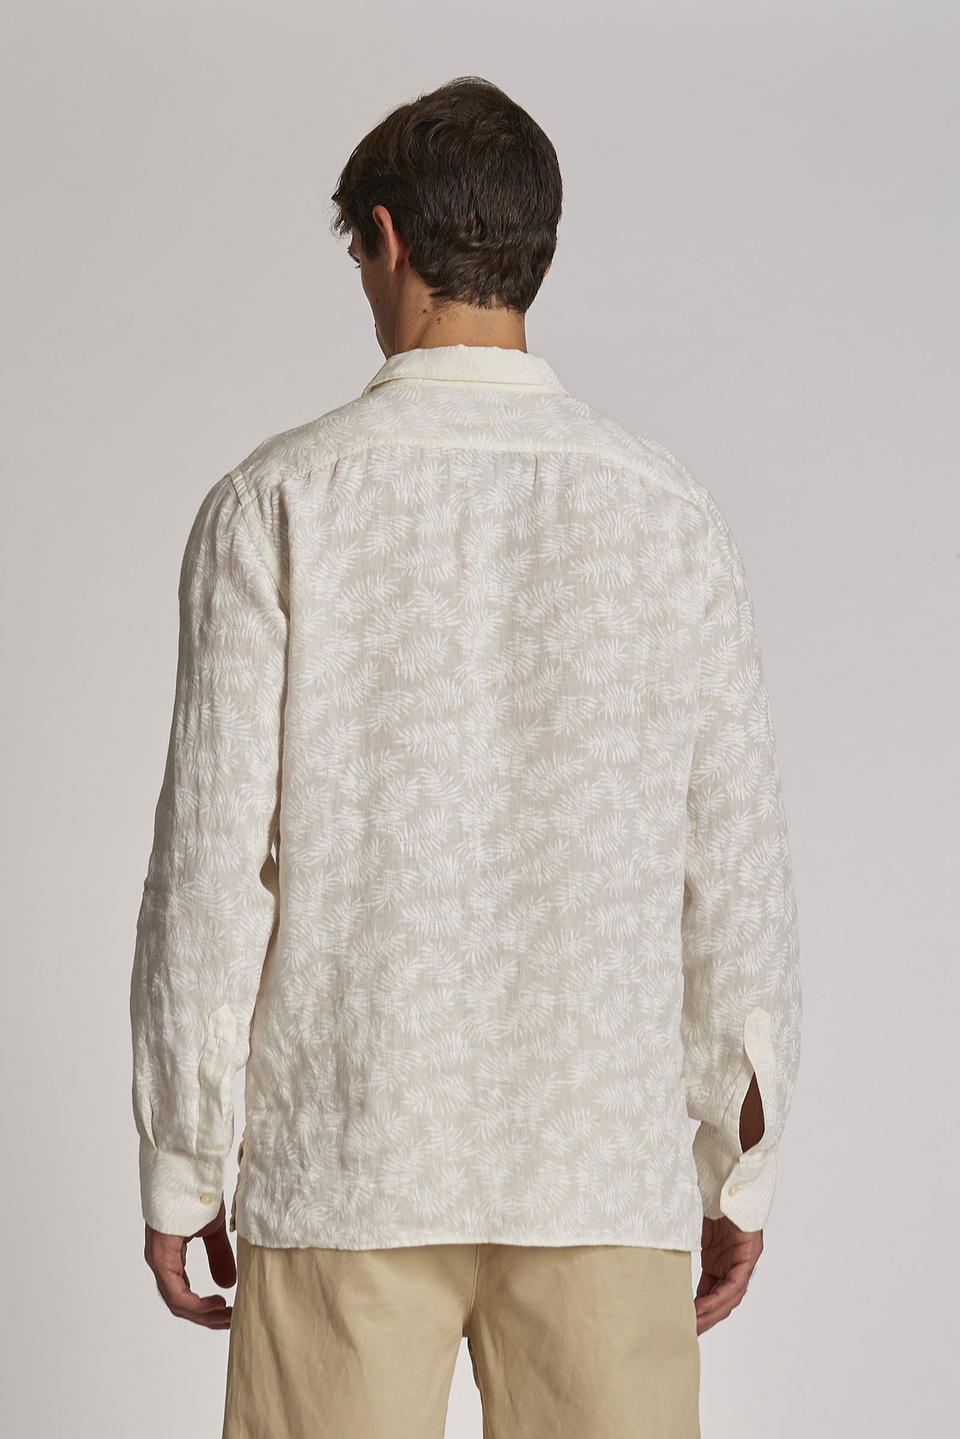 Camisa de hombre de lino, manga larga, corte regular - La Martina - Official Online Shop